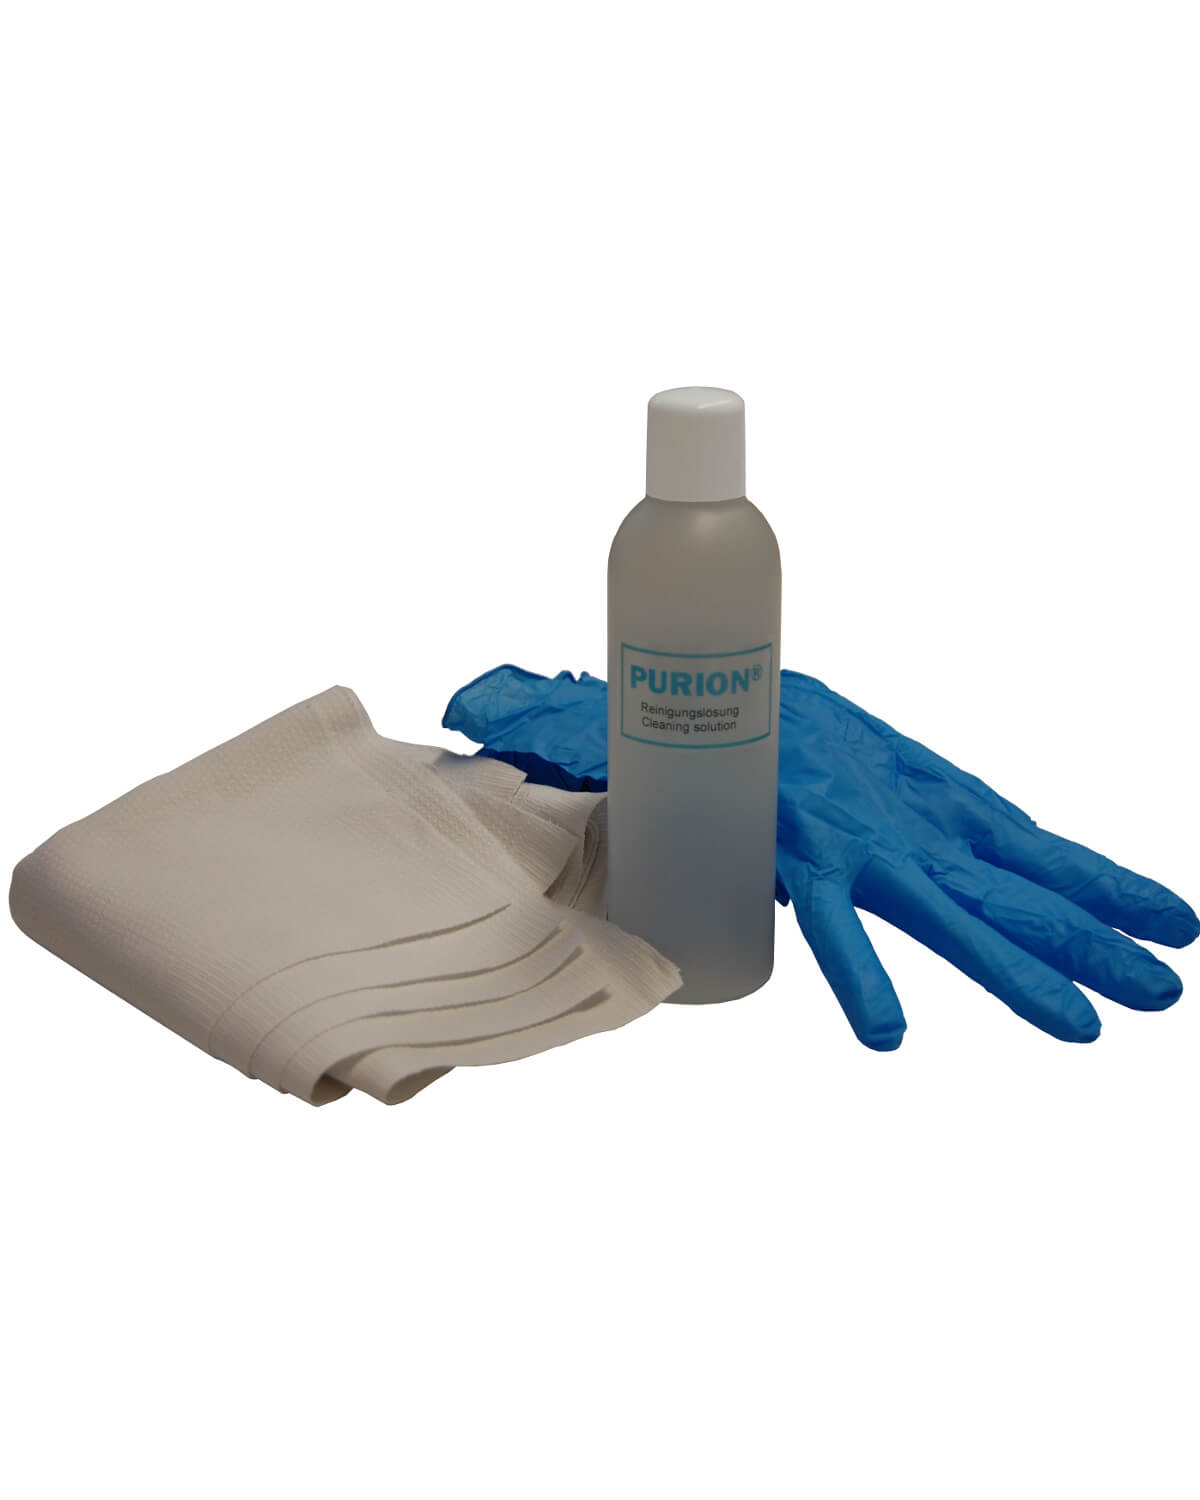 Ein Paar PURION 500 OTC Bundle Handschuhe und eine Flasche Reinigungslösung der PURION GmbH für autarkes Leben.